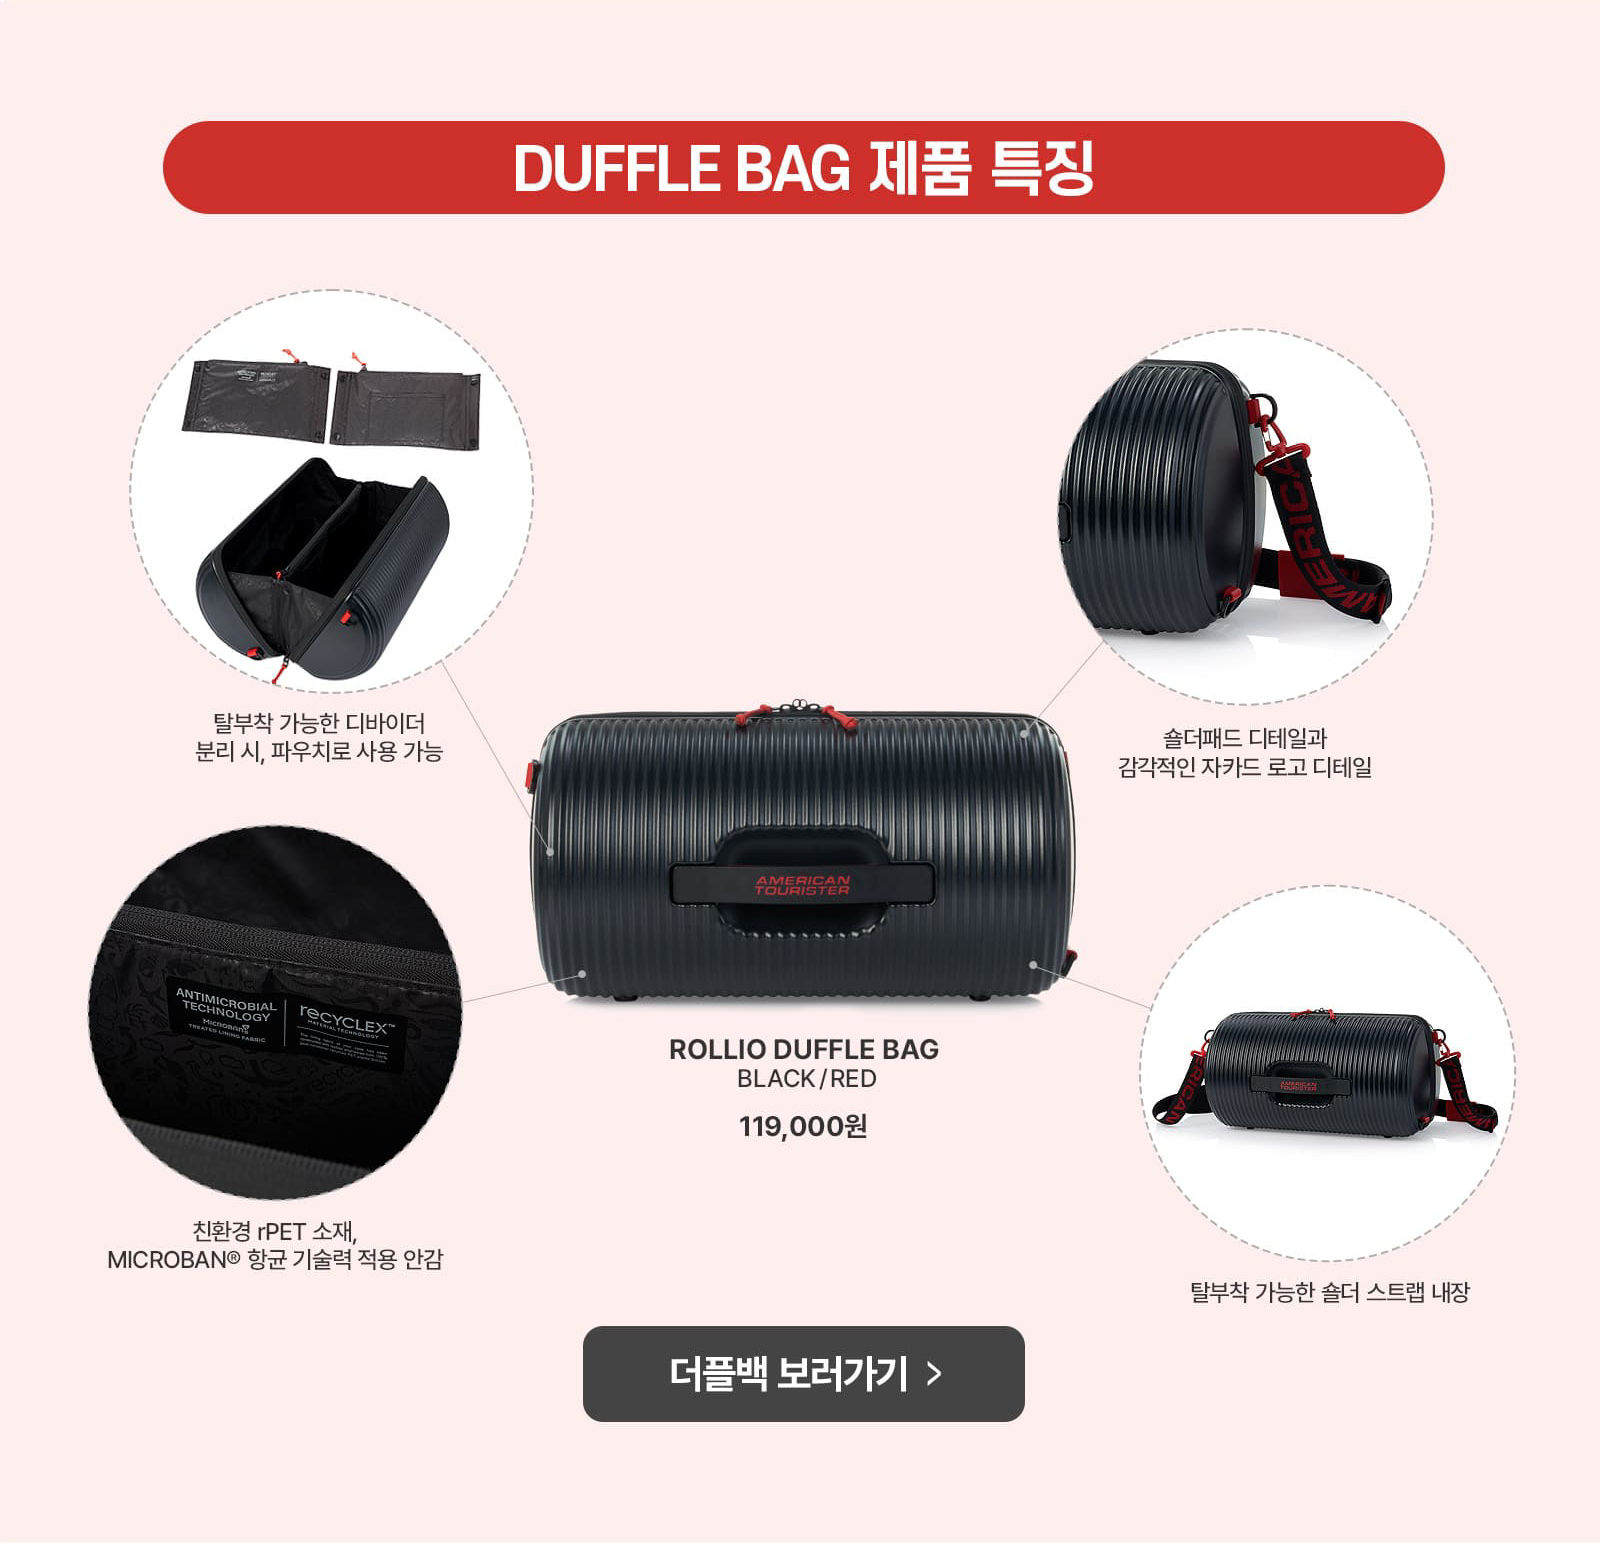 DUFFLE BAG 제품 특징